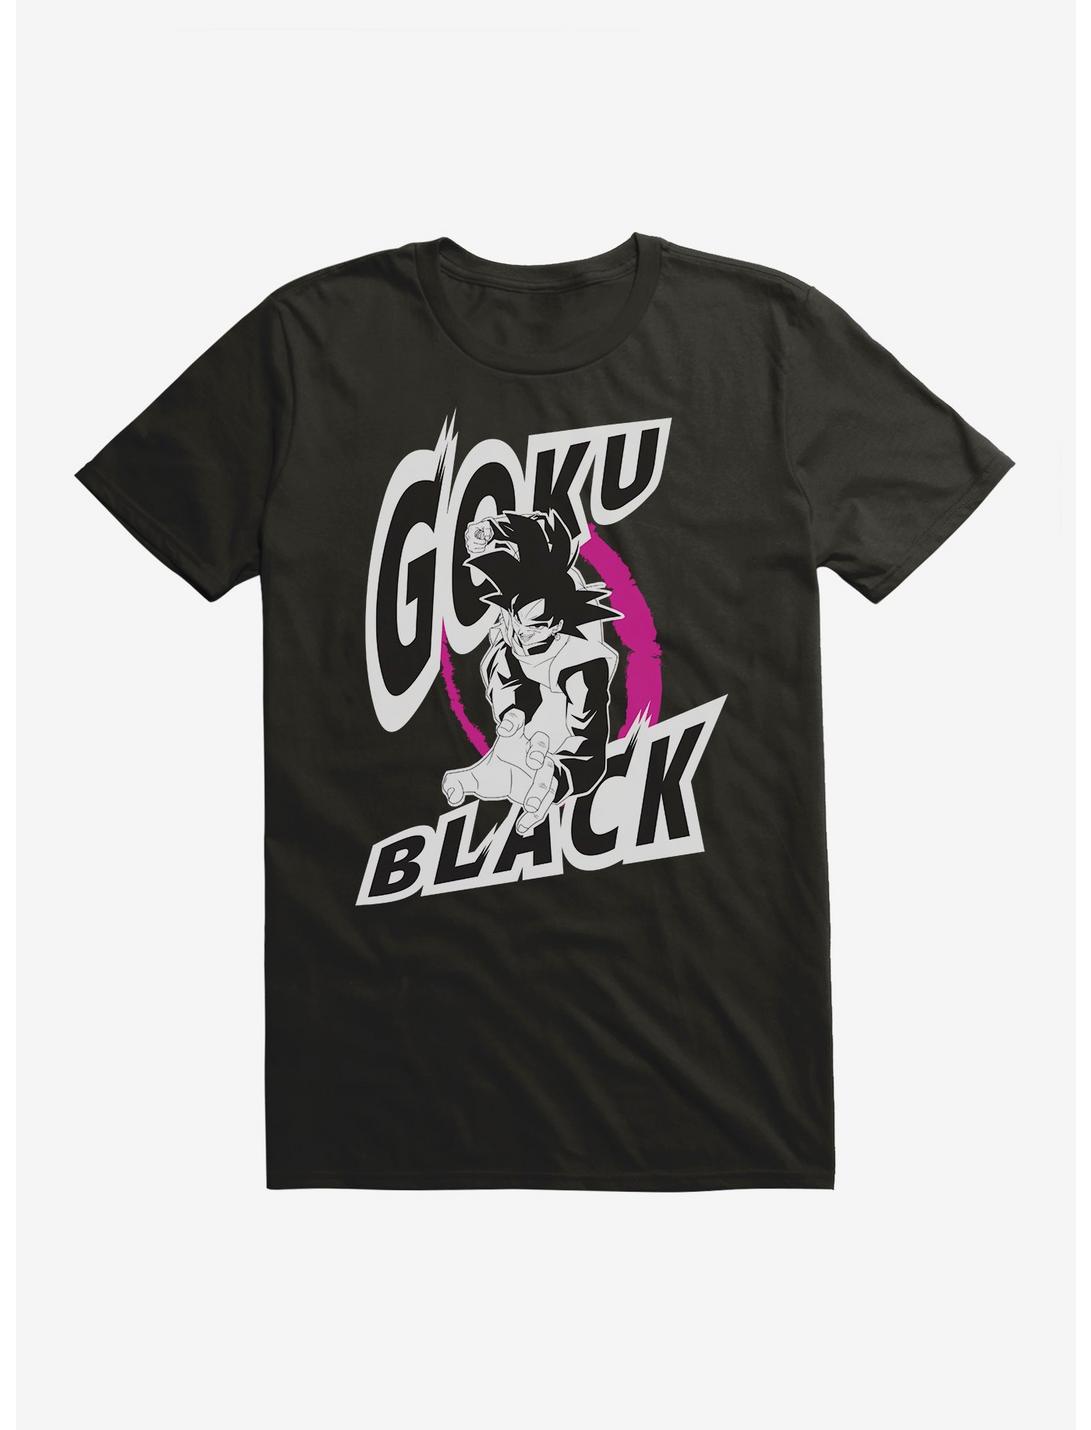 Dragon Ball Super Goku Black T-Shirt, BLACK, hi-res